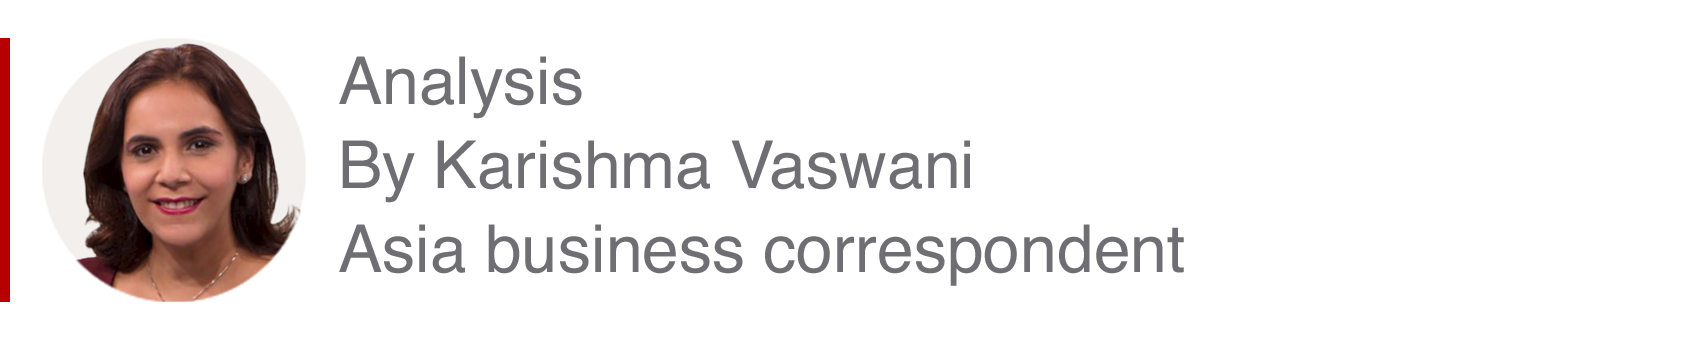 Zestaw do analizy autorstwa Karishmy Vaswani, korespondenta biznesowego z Azji